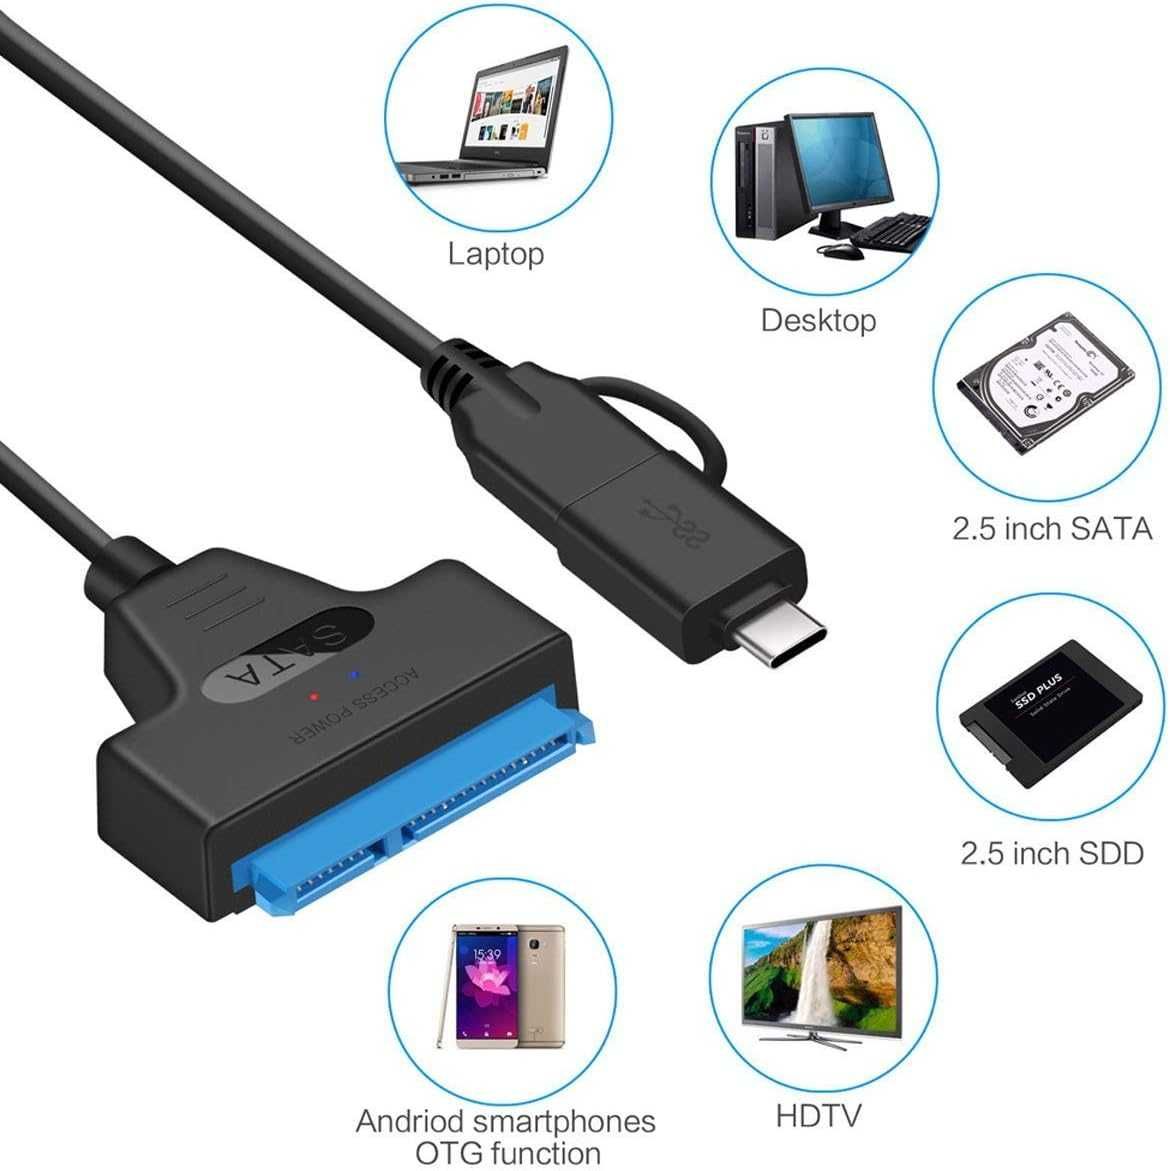 Cablu adaptor USB 3.0 + USB-C la SATA 3 pt HDD SSD laptop 2.5 inch